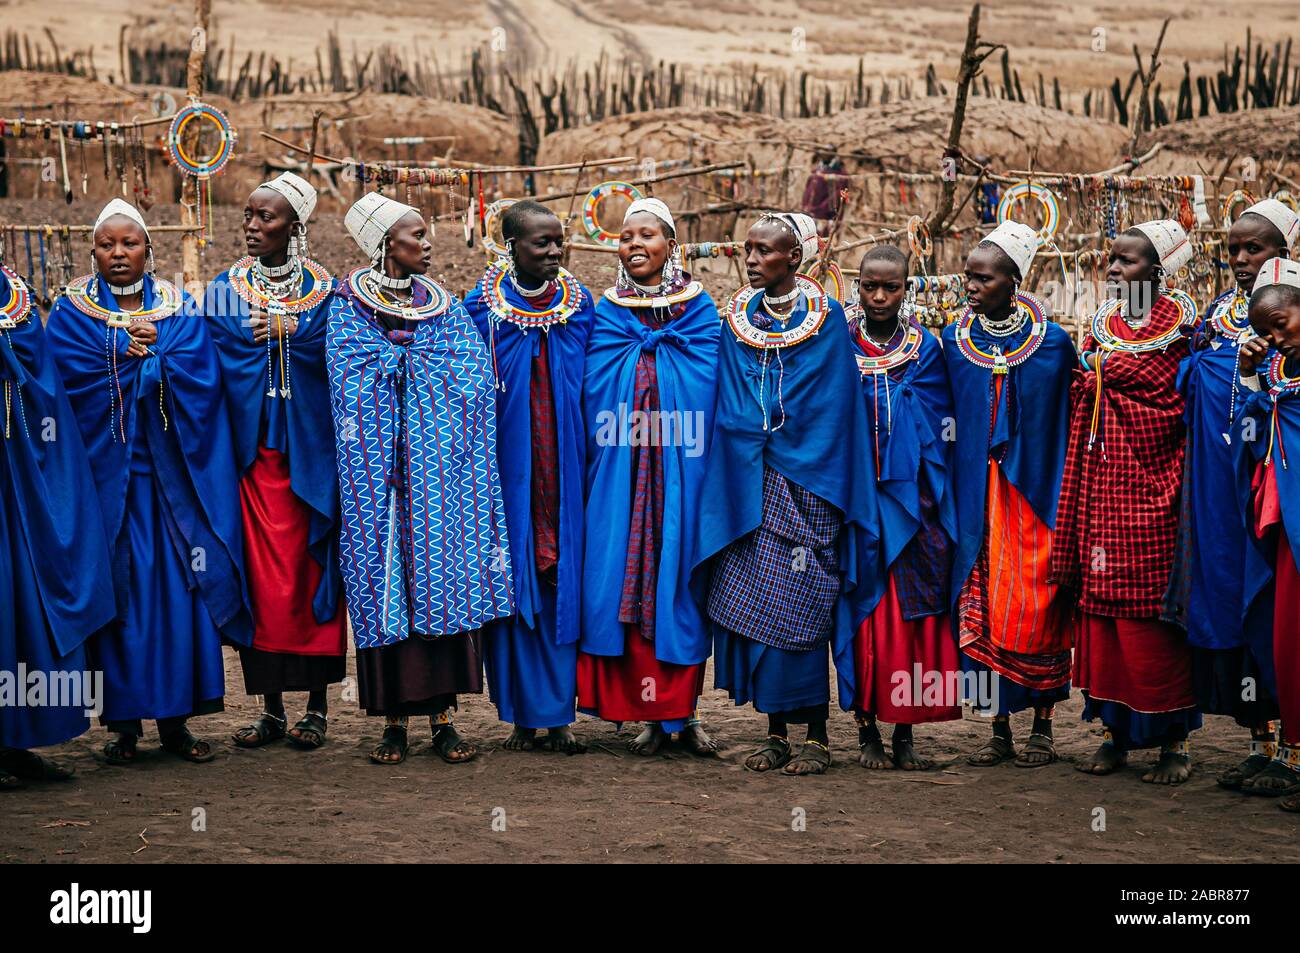 JUN 24, 2011 Serengeti, Tansania - Gruppe der Afrikanischen Masai oder Masai Stamm Frau in Blau Tuch tragen Kopfschmuck und Stein Perlen Schmuck. Ethnische Grou Stockfoto